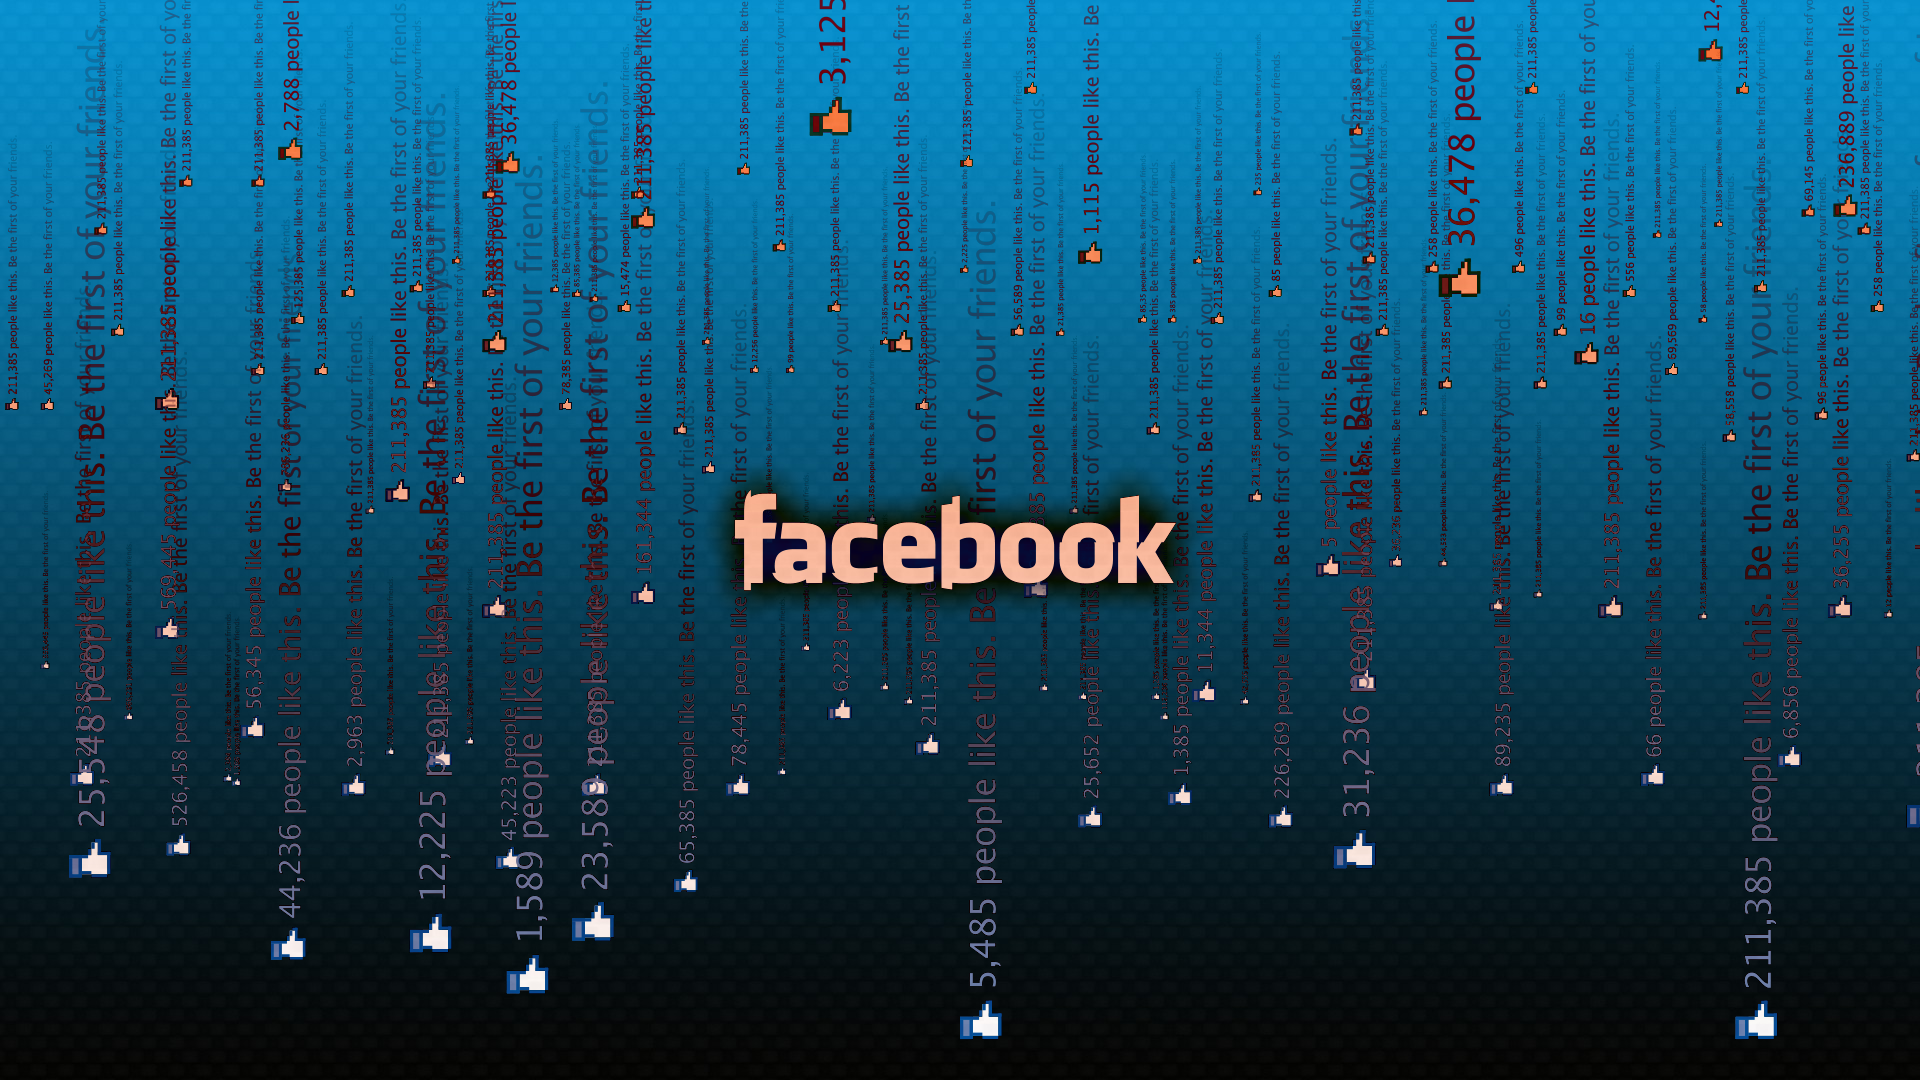 facebook wallpaper hd,blau,text,wasser,schriftart,himmel